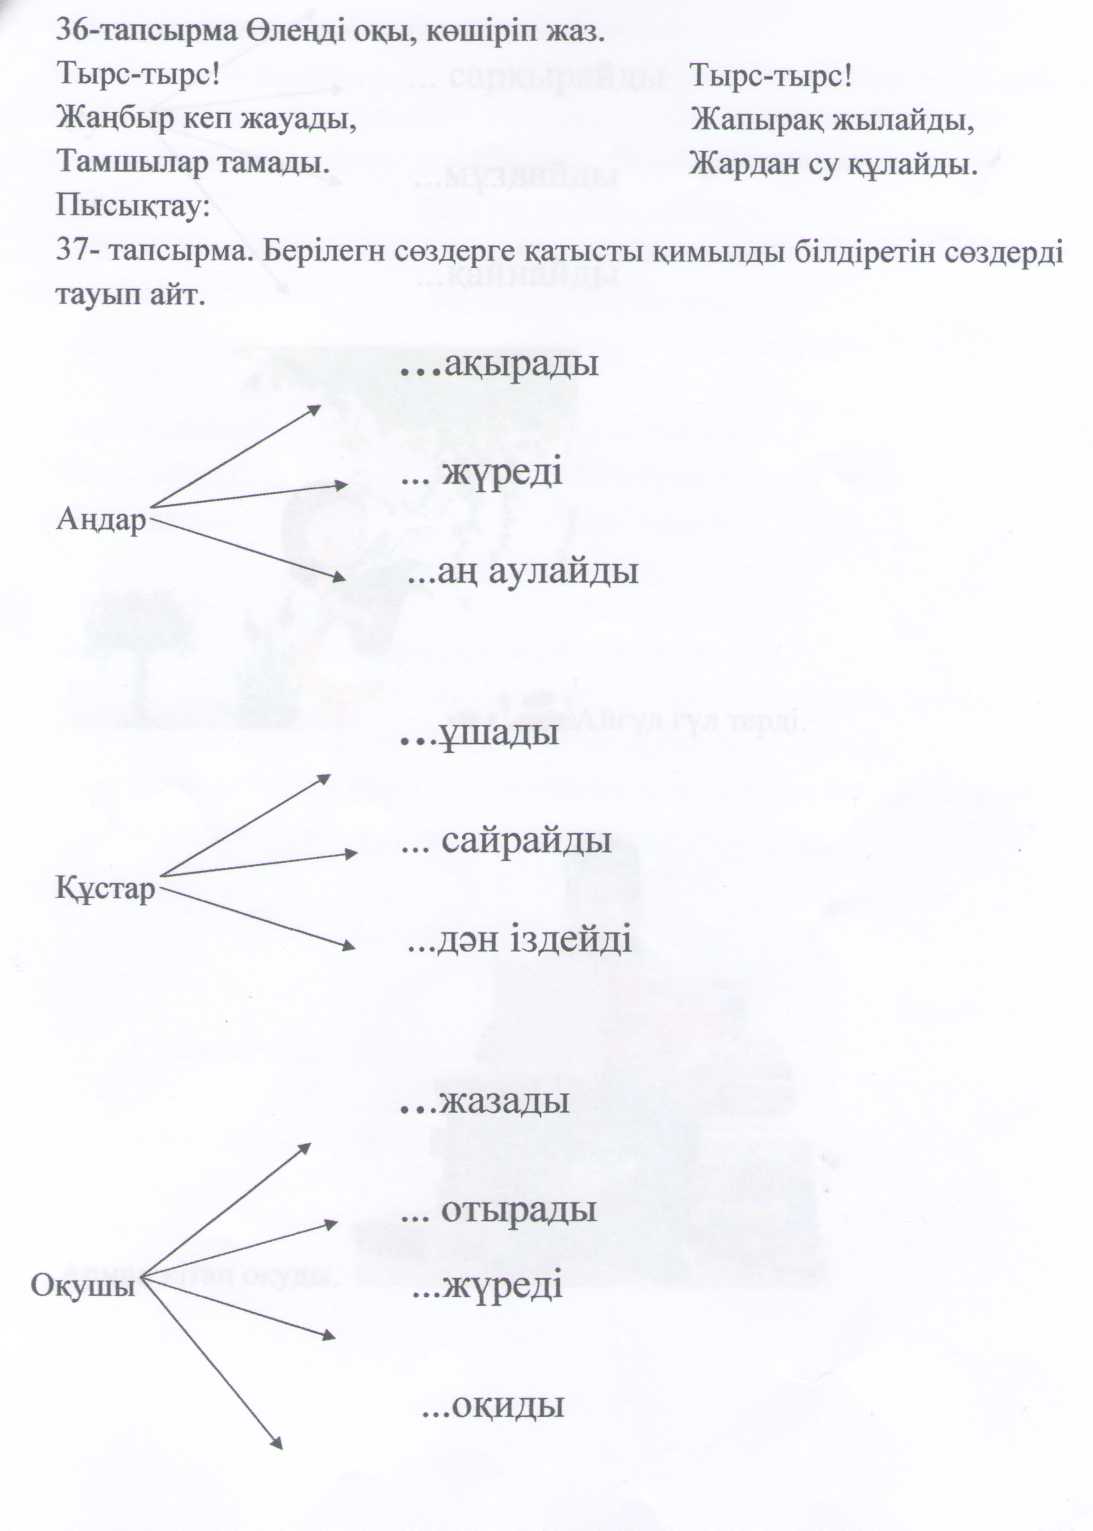 Конспект по казахскому языку на тему «Баяндауыш»